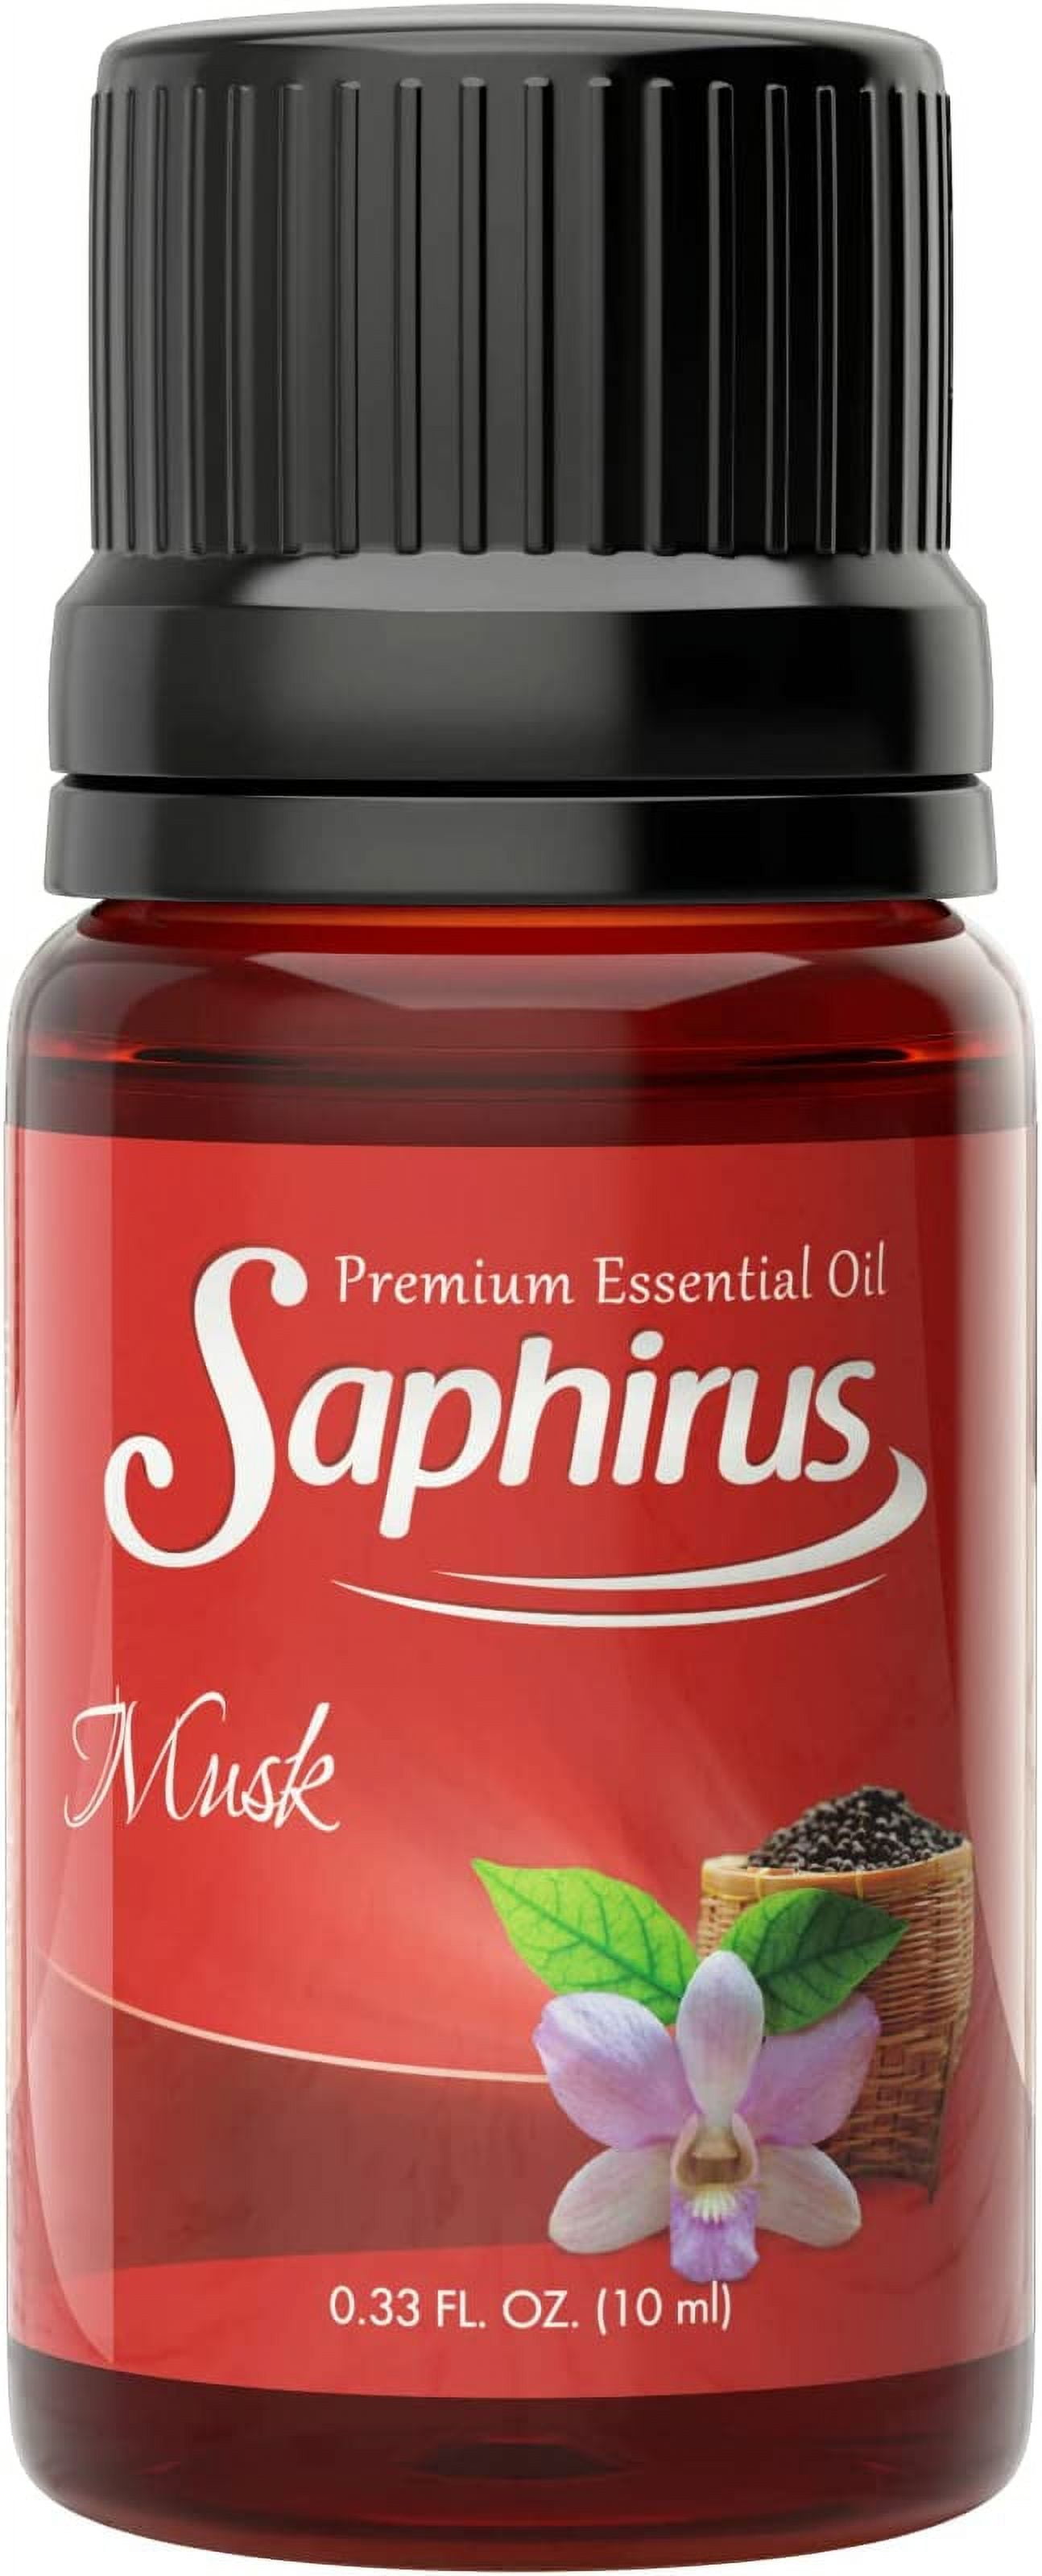 Saphirus Essential Oil - Musk